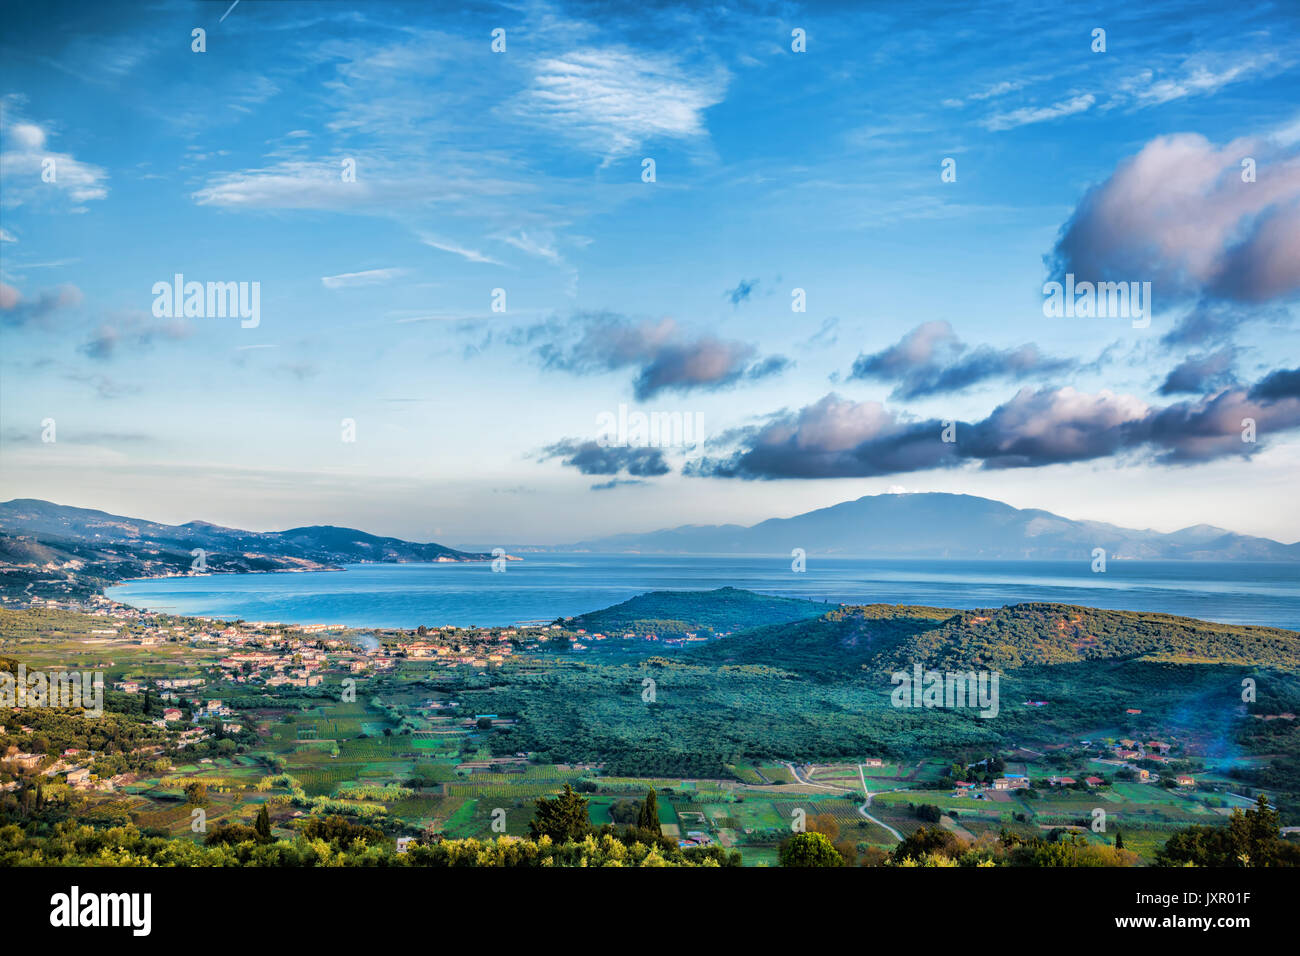 Zakynthos island with green fields in Greece Stock Photo